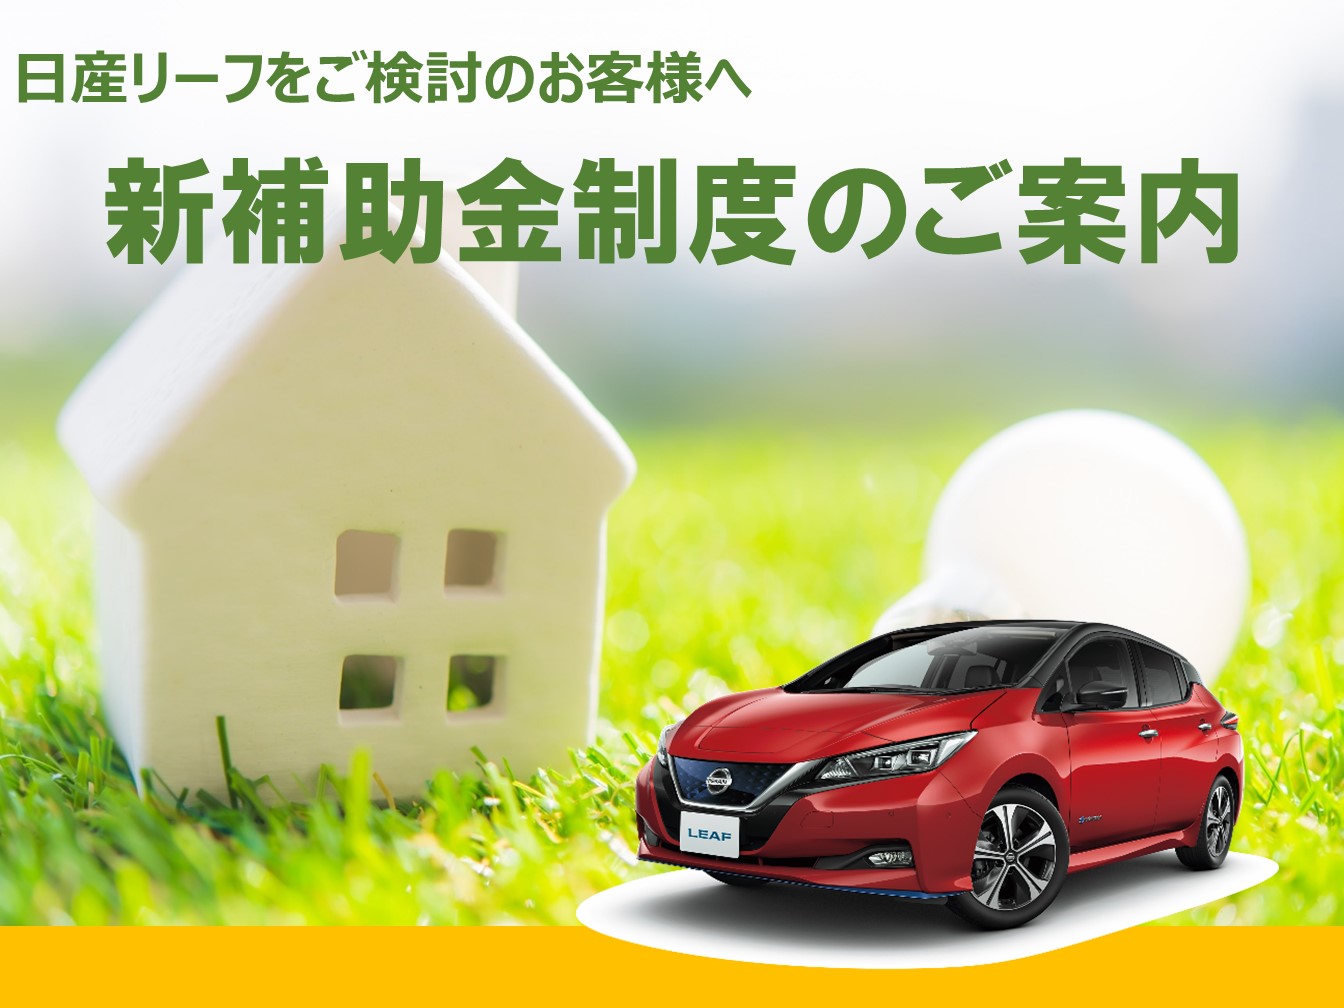 奈良日産自動車株式会社 キャンペーン